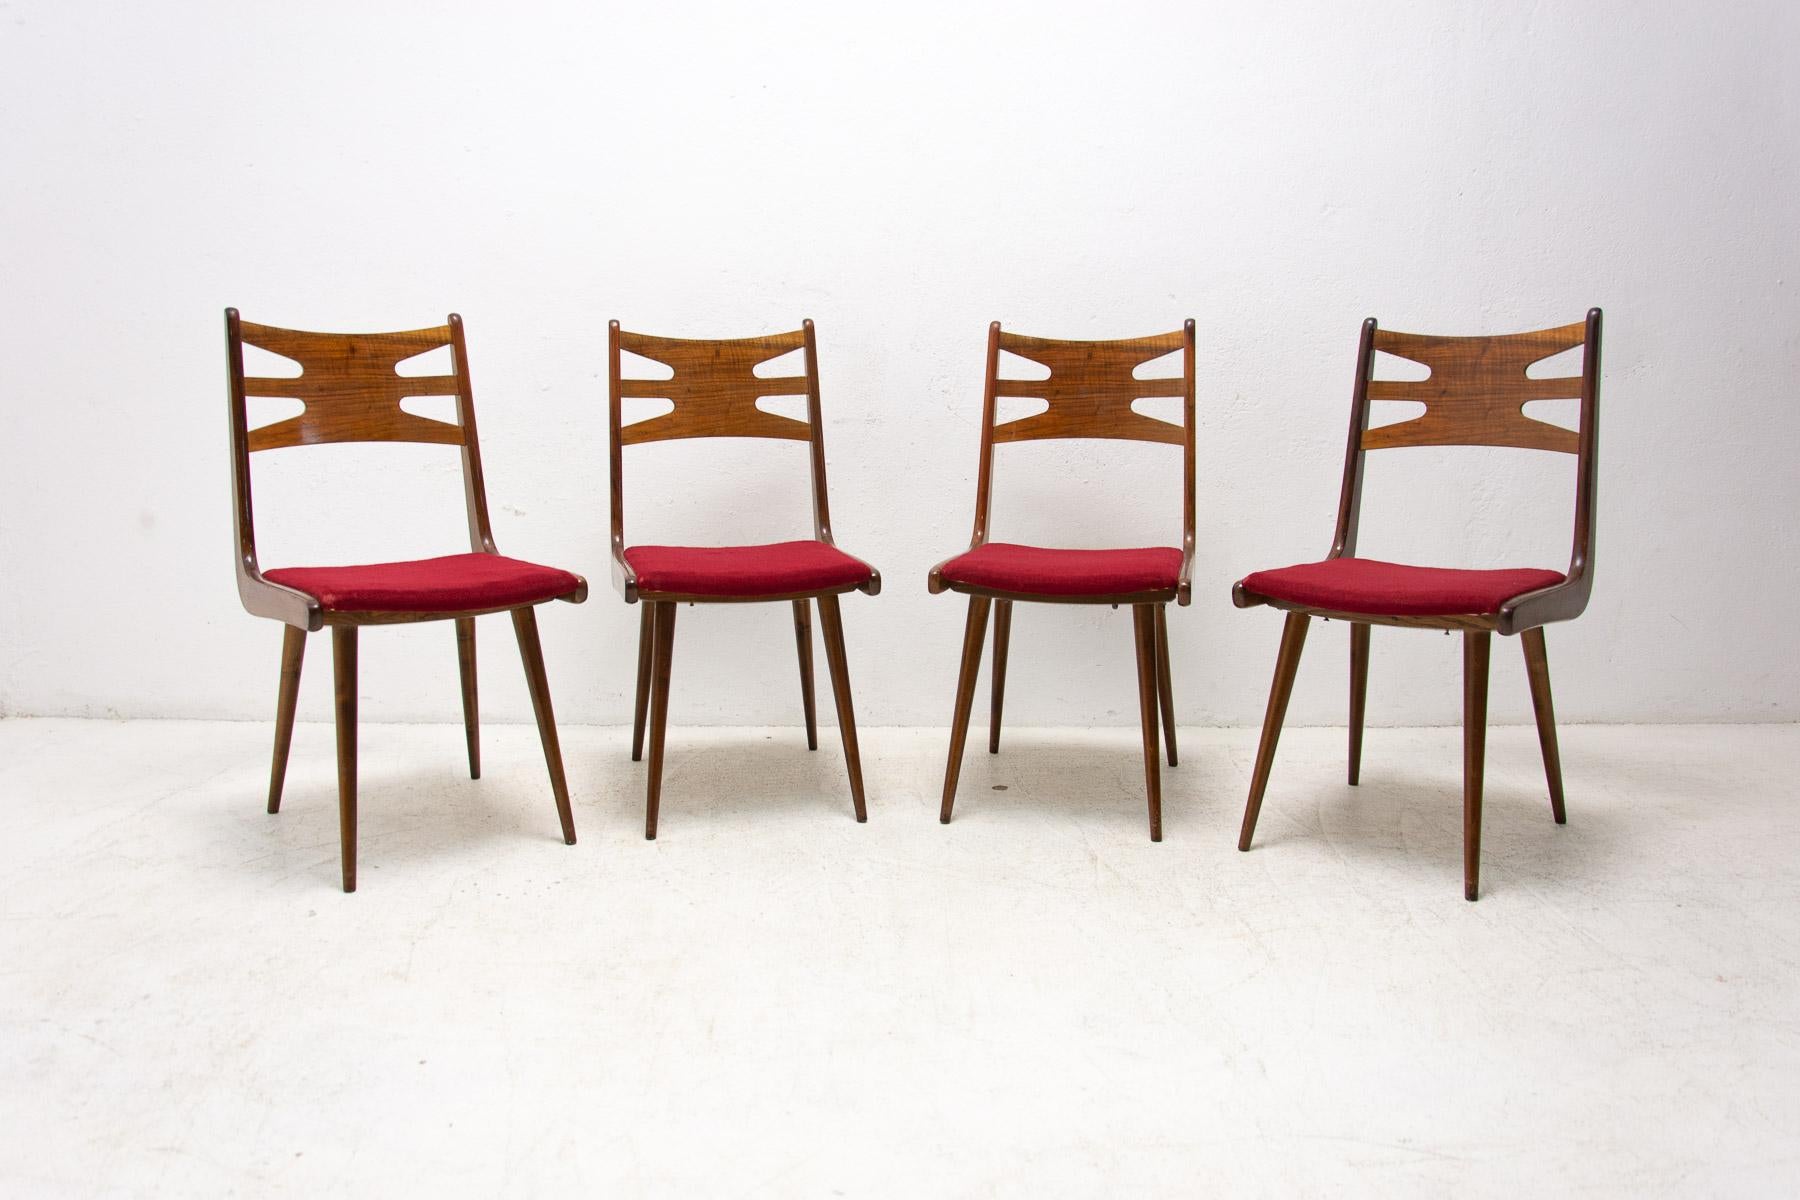 Diese schönen Vintage-Esszimmerstühle wurden in der ehemaligen Tschechoslowakei in den 1970er Jahren hergestellt.

Wahrscheinlich handelt es sich um die Firma TON, den Nachfolger von Thonet in der Tschechoslowakei.

Sie sind mit originalem